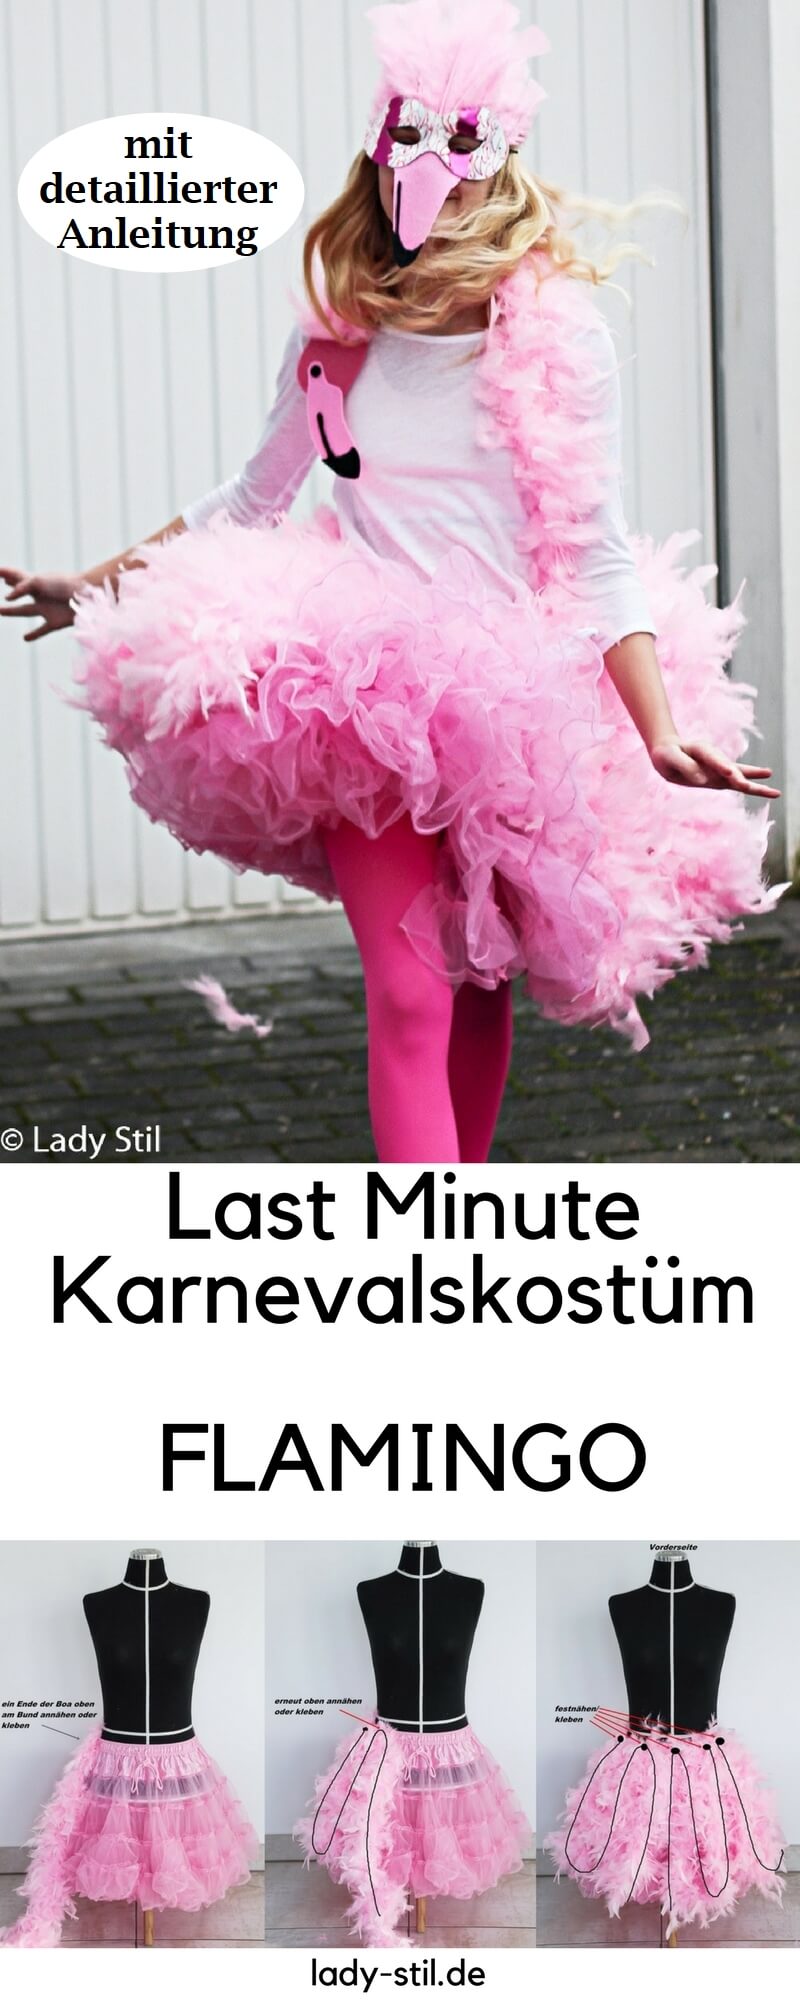 Last Minute Karnevalskostüm Flamingo